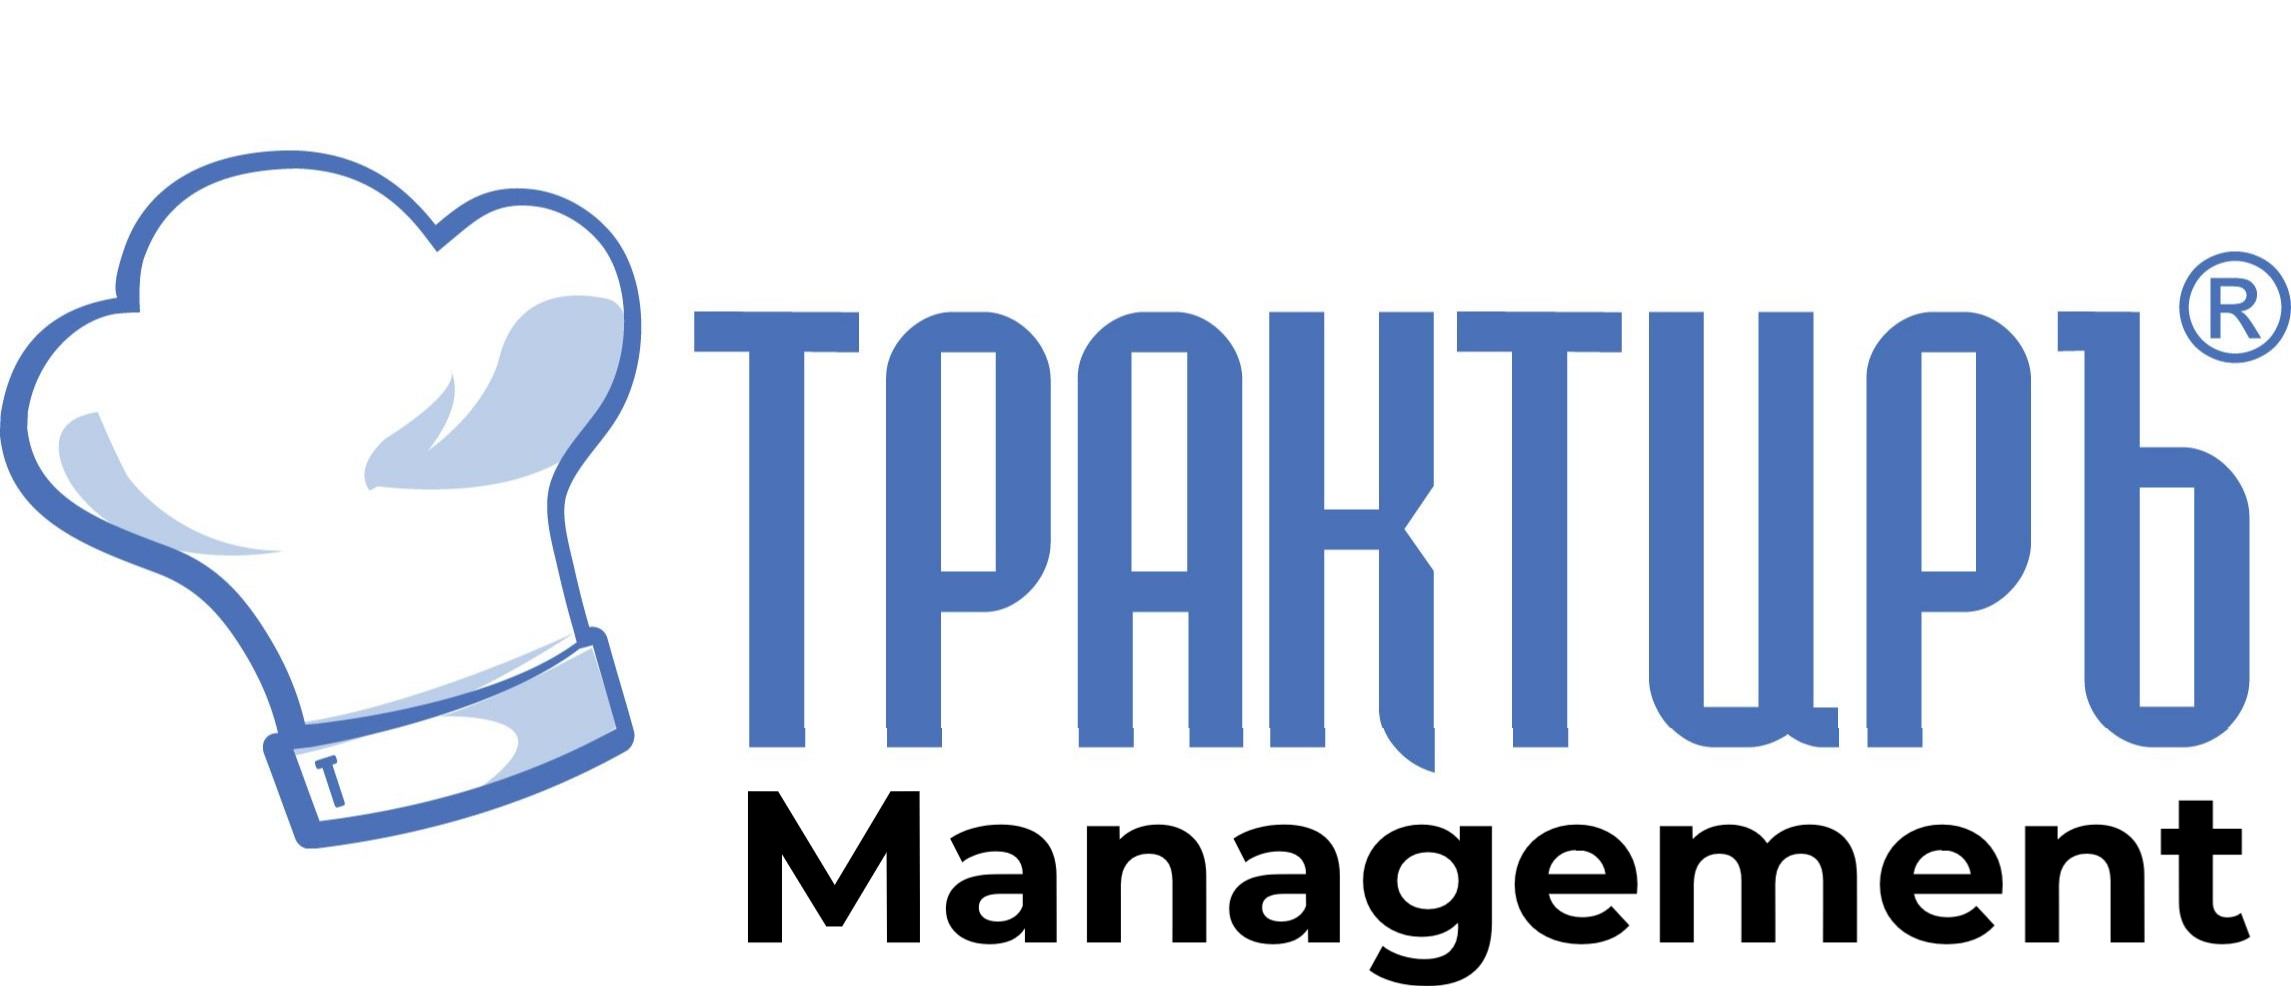 Трактиръ: Management в Оренбурге